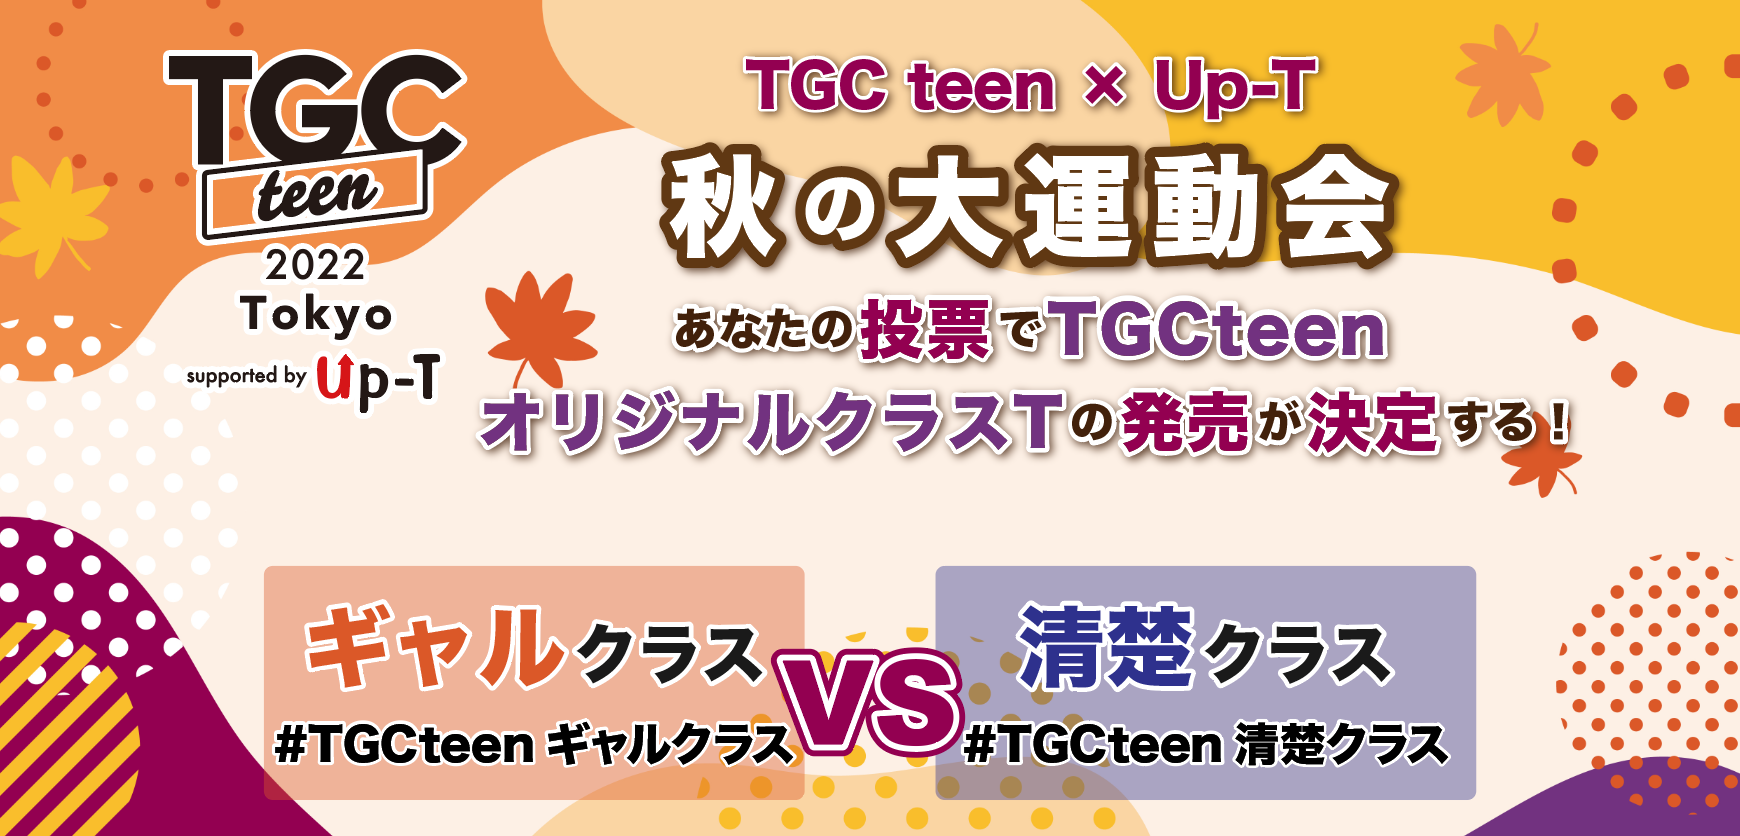 オリジナルTシャツのUp-Tが「TGC teen 2022 Tokyo」との連携企画「TGC